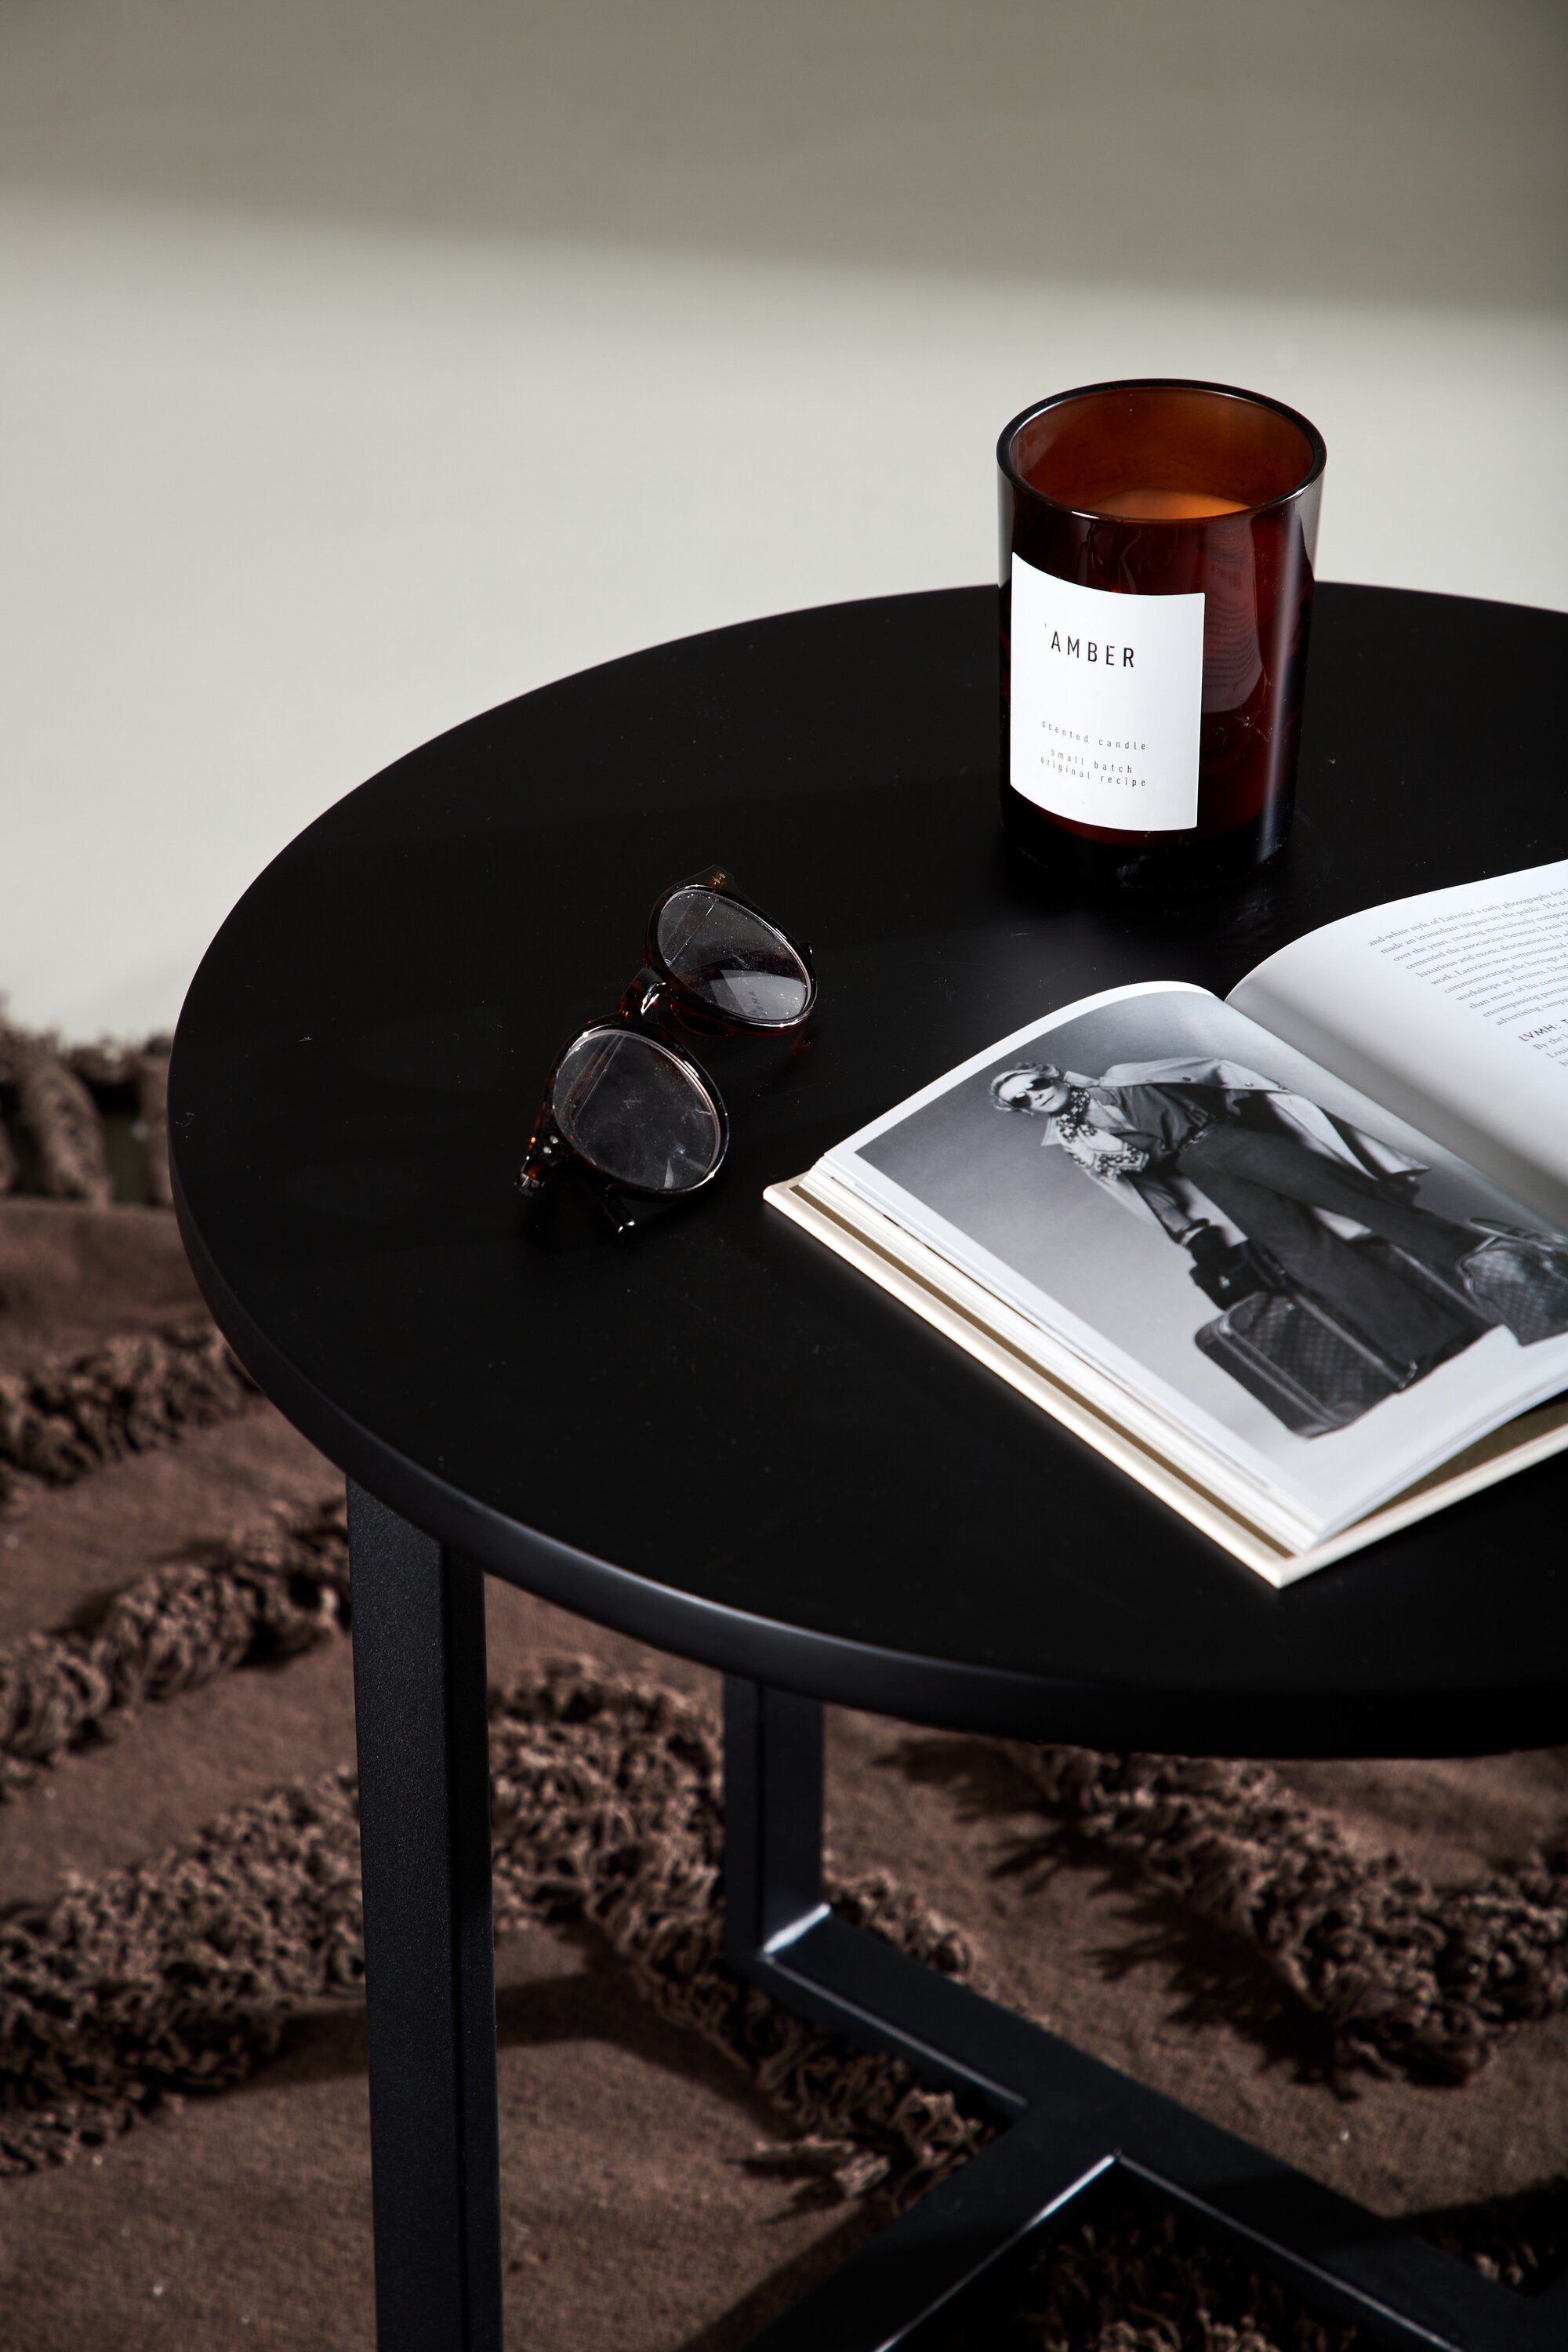 Lawton Coffee Tisch in Schwarz präsentiert im Onlineshop von KAQTU Design AG. Beistelltisch ist von Venture Home